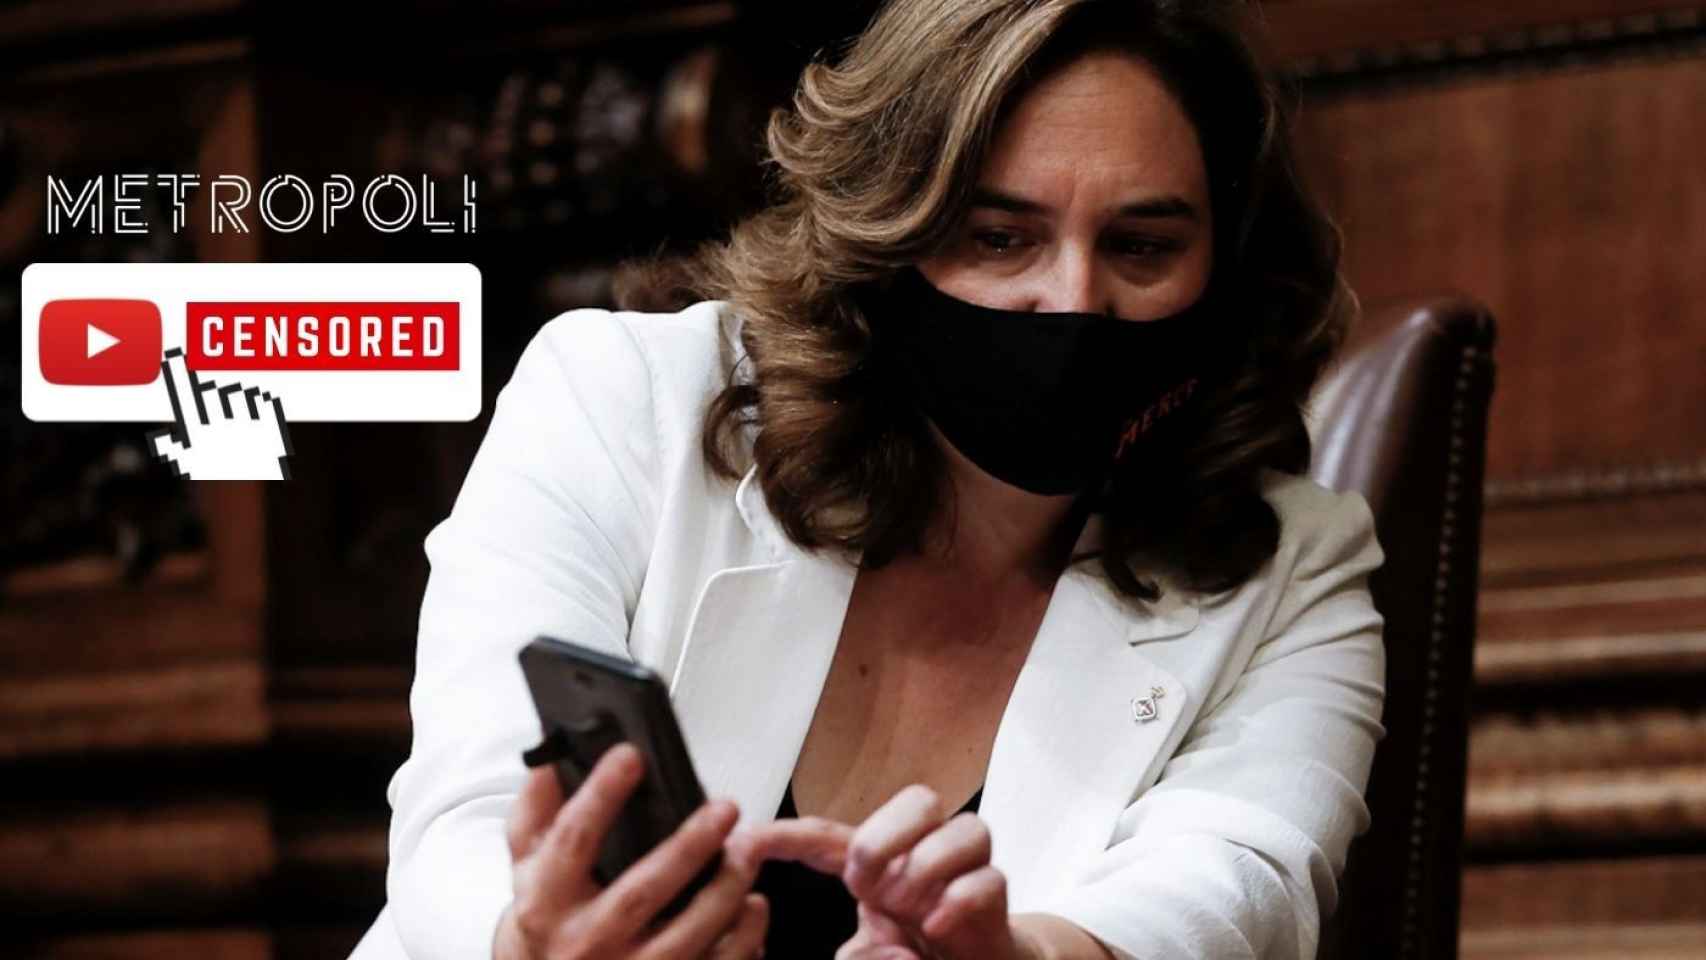 La alcaldesa Ada Colau, que considera un logro censurar vídeos de YouTube de Metrópoli / FOTOMONTAJE METRÓPOLI